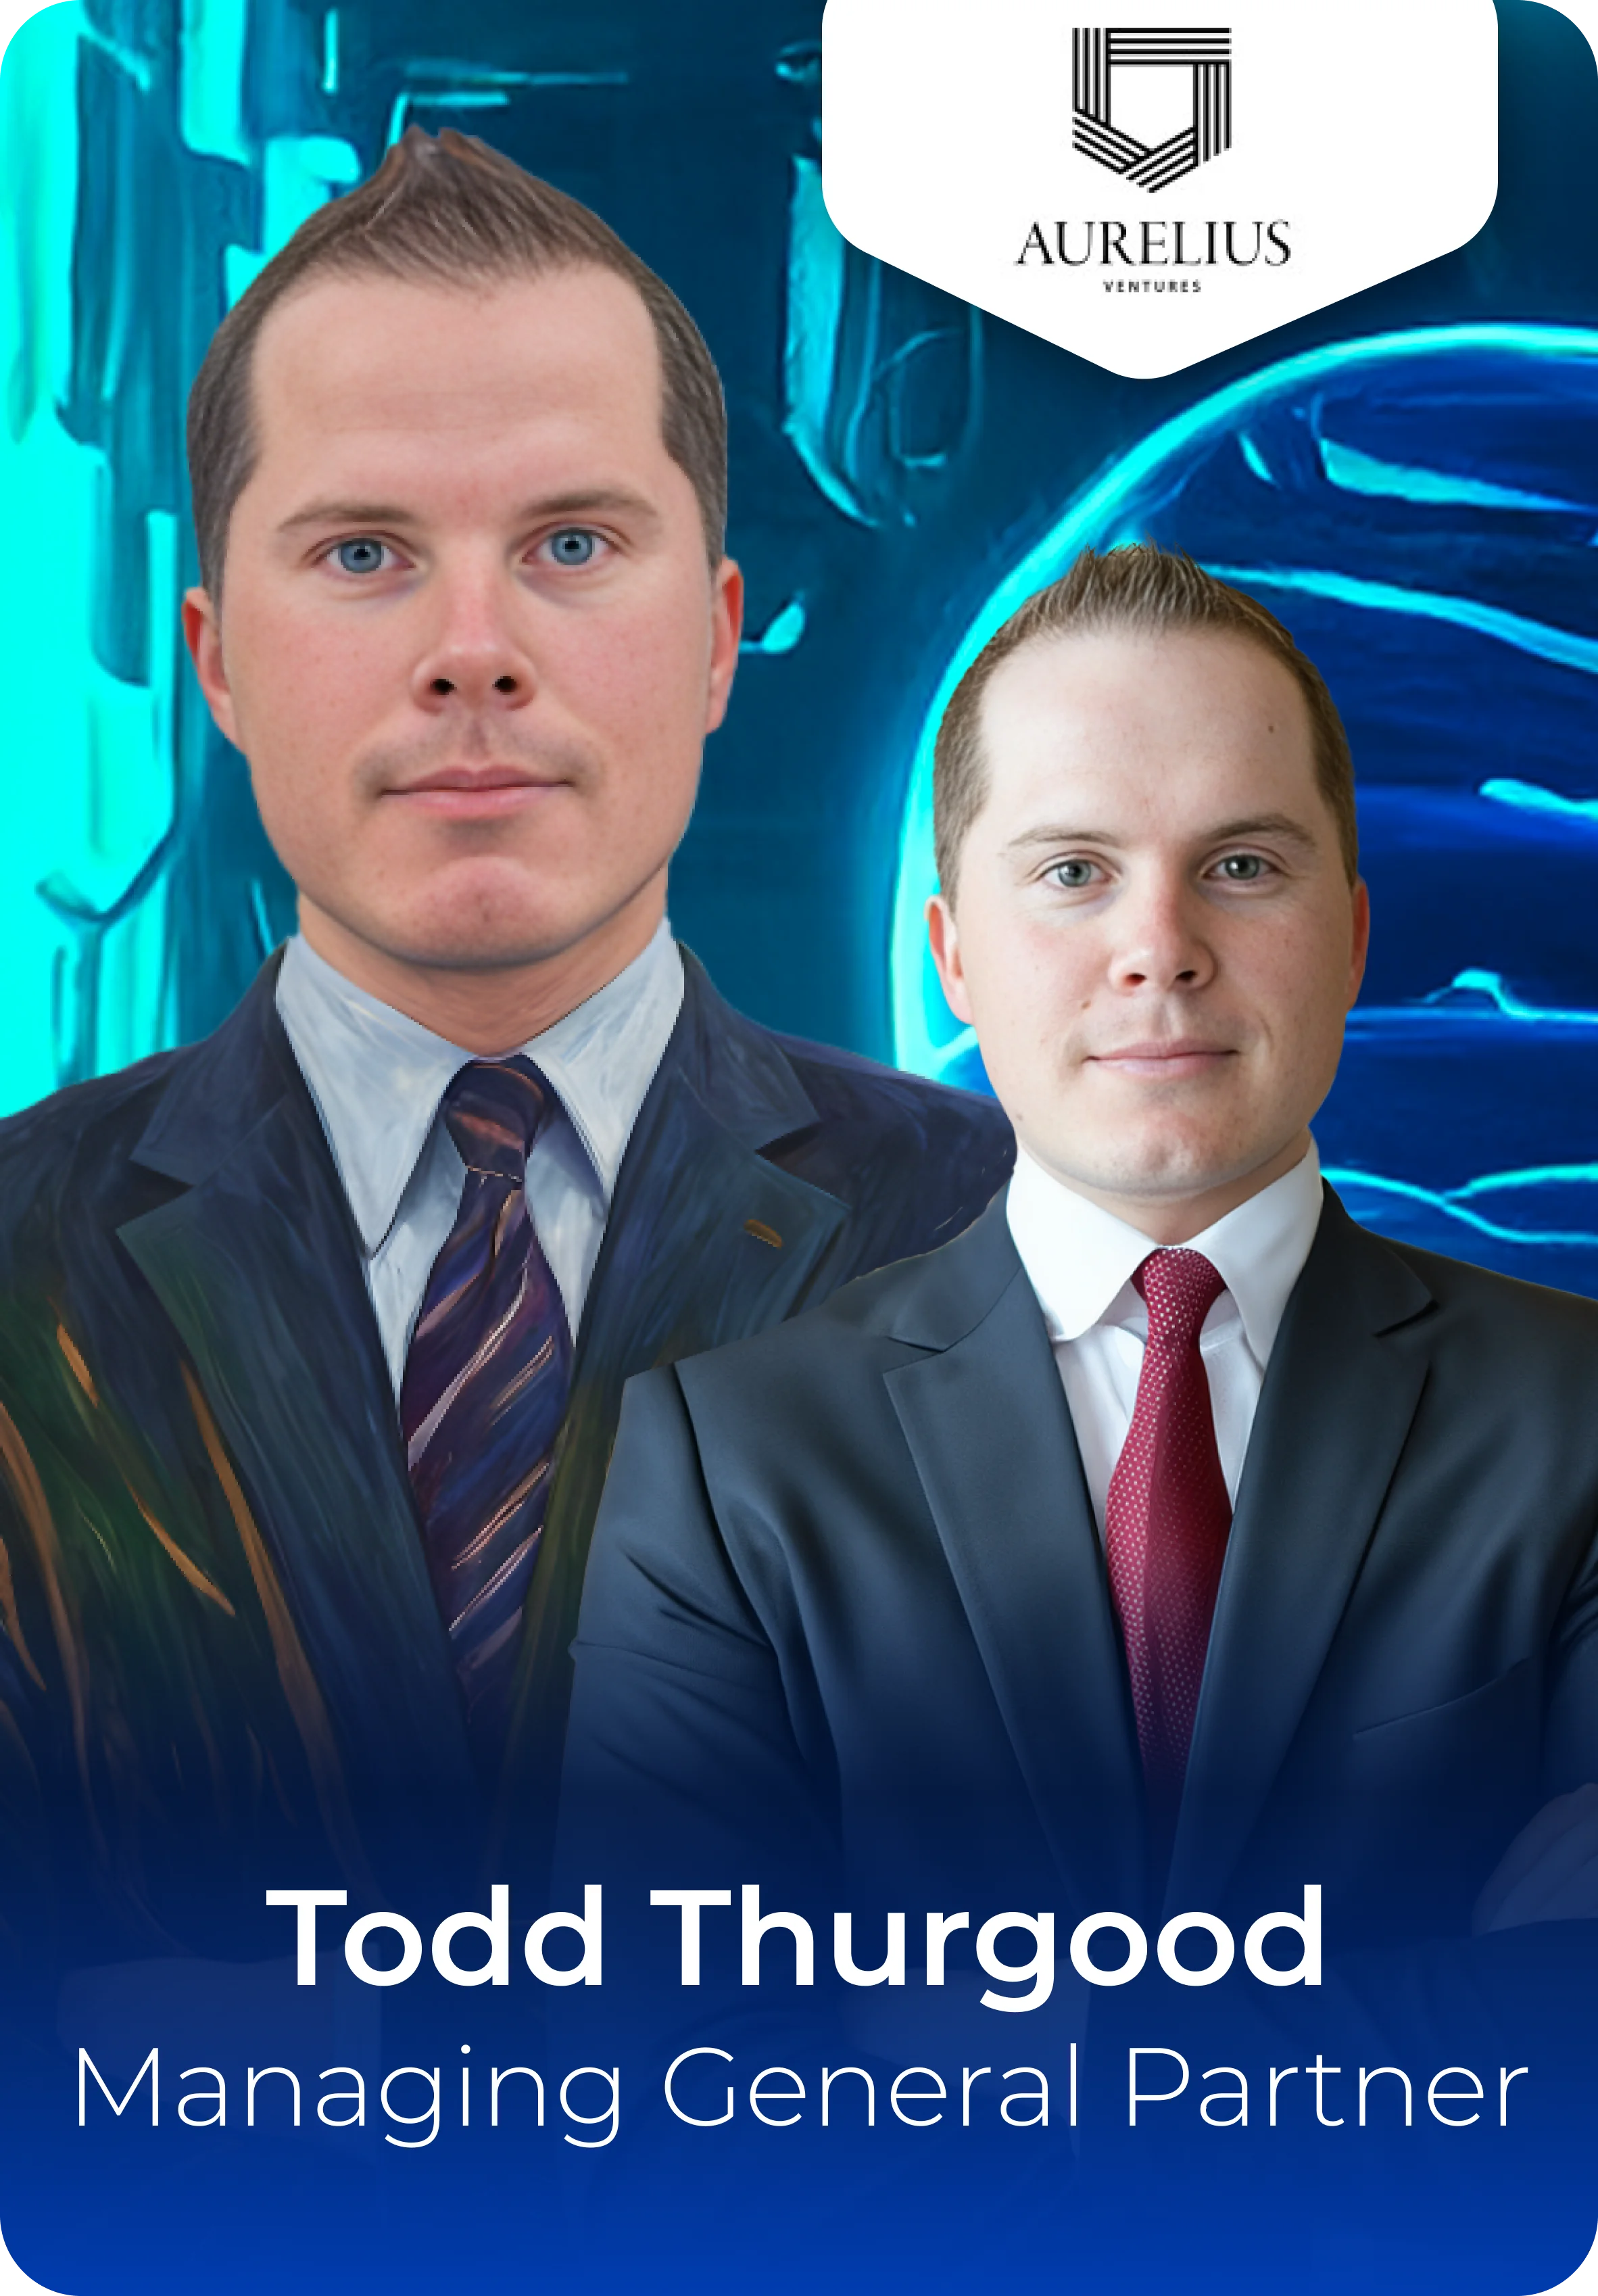 Todd Thurgood